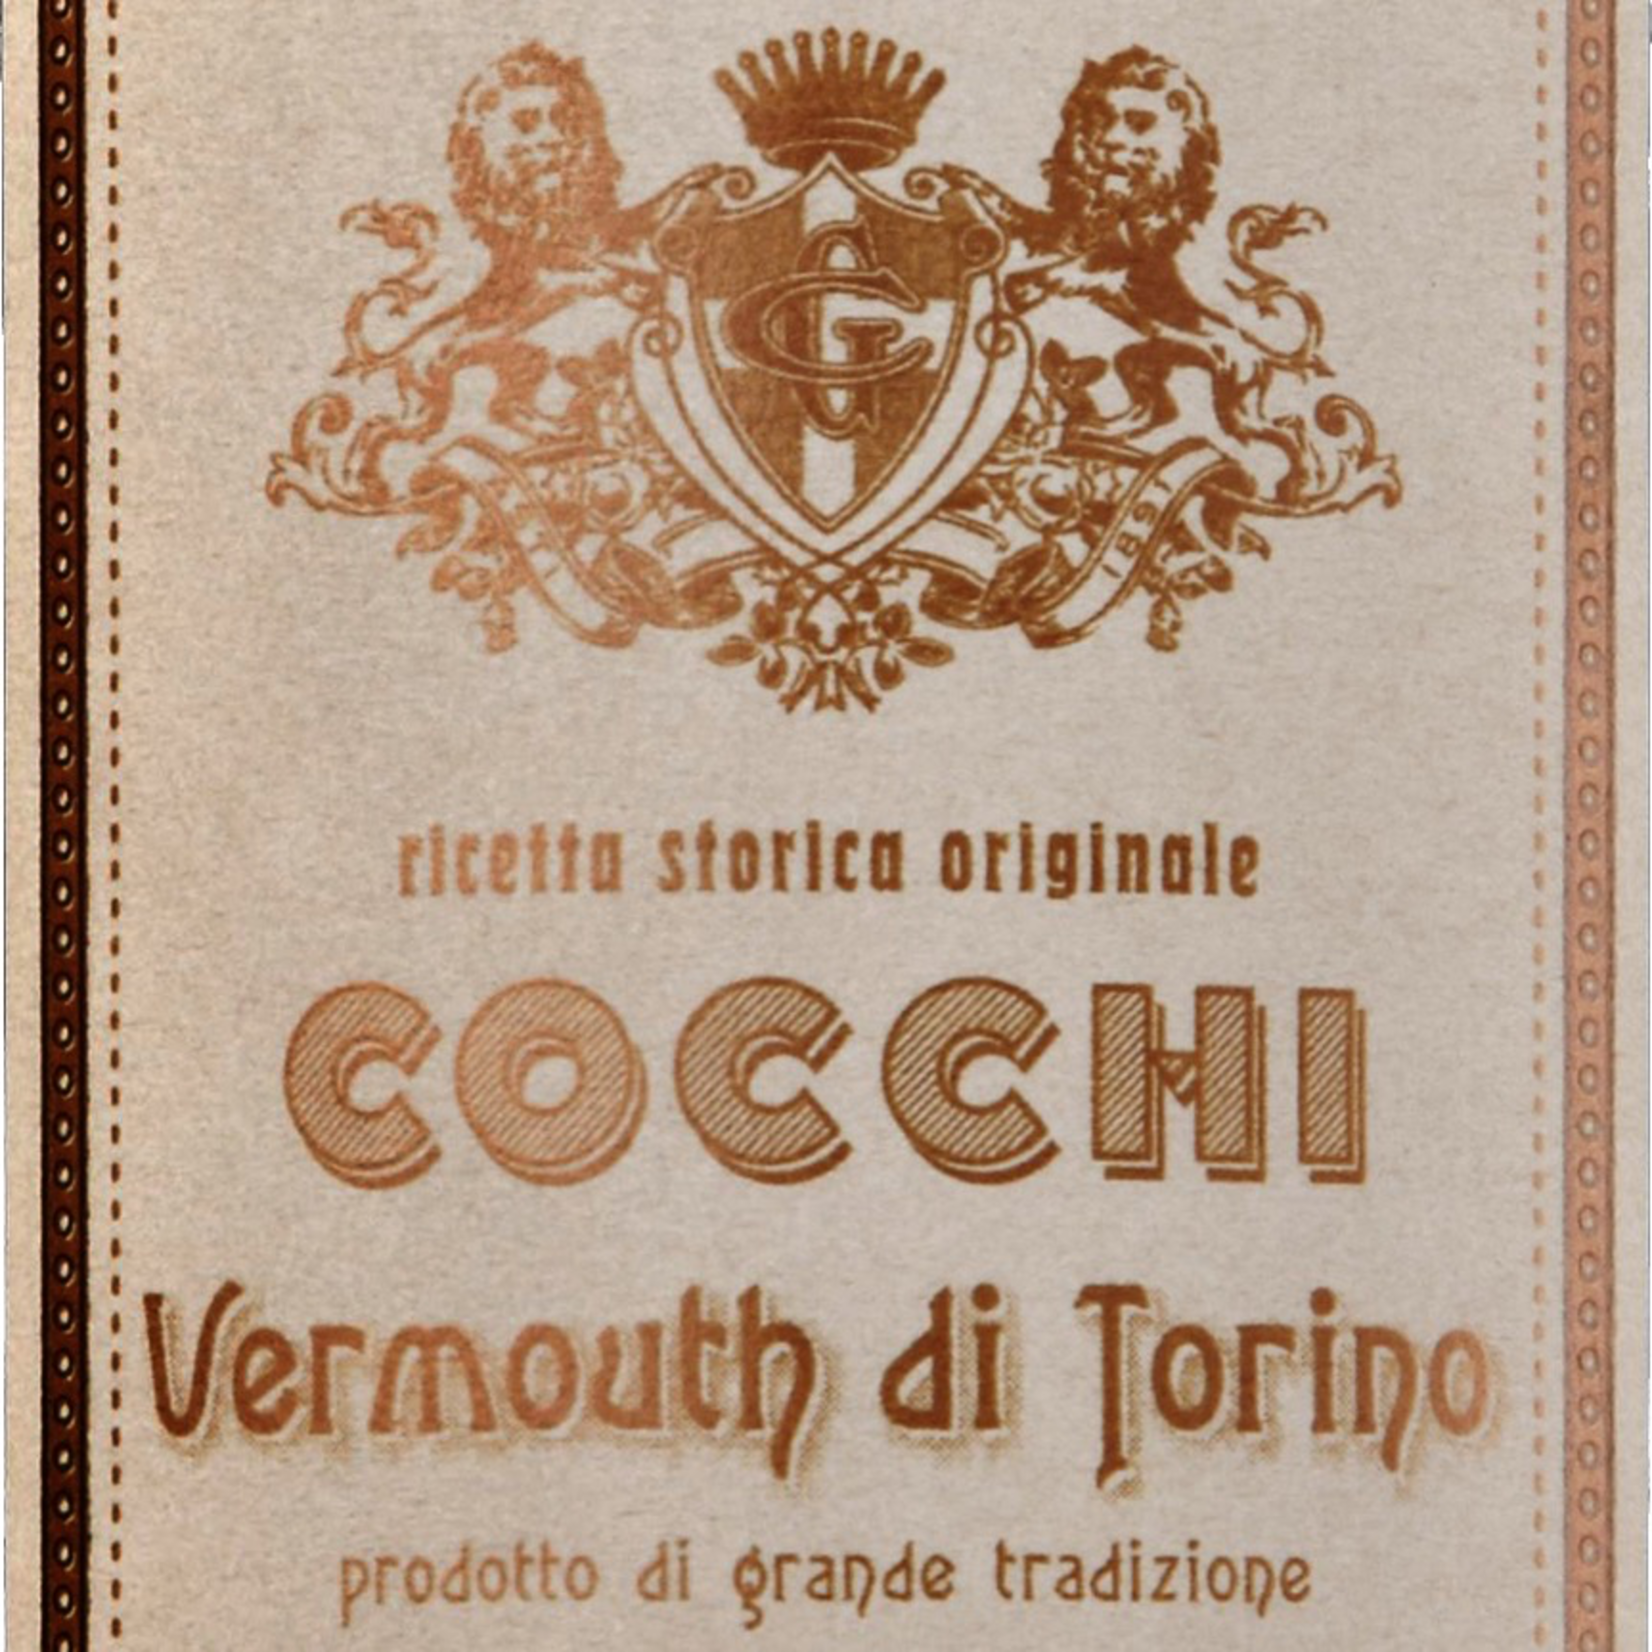 Italy Cocchi Vermouth di Torino